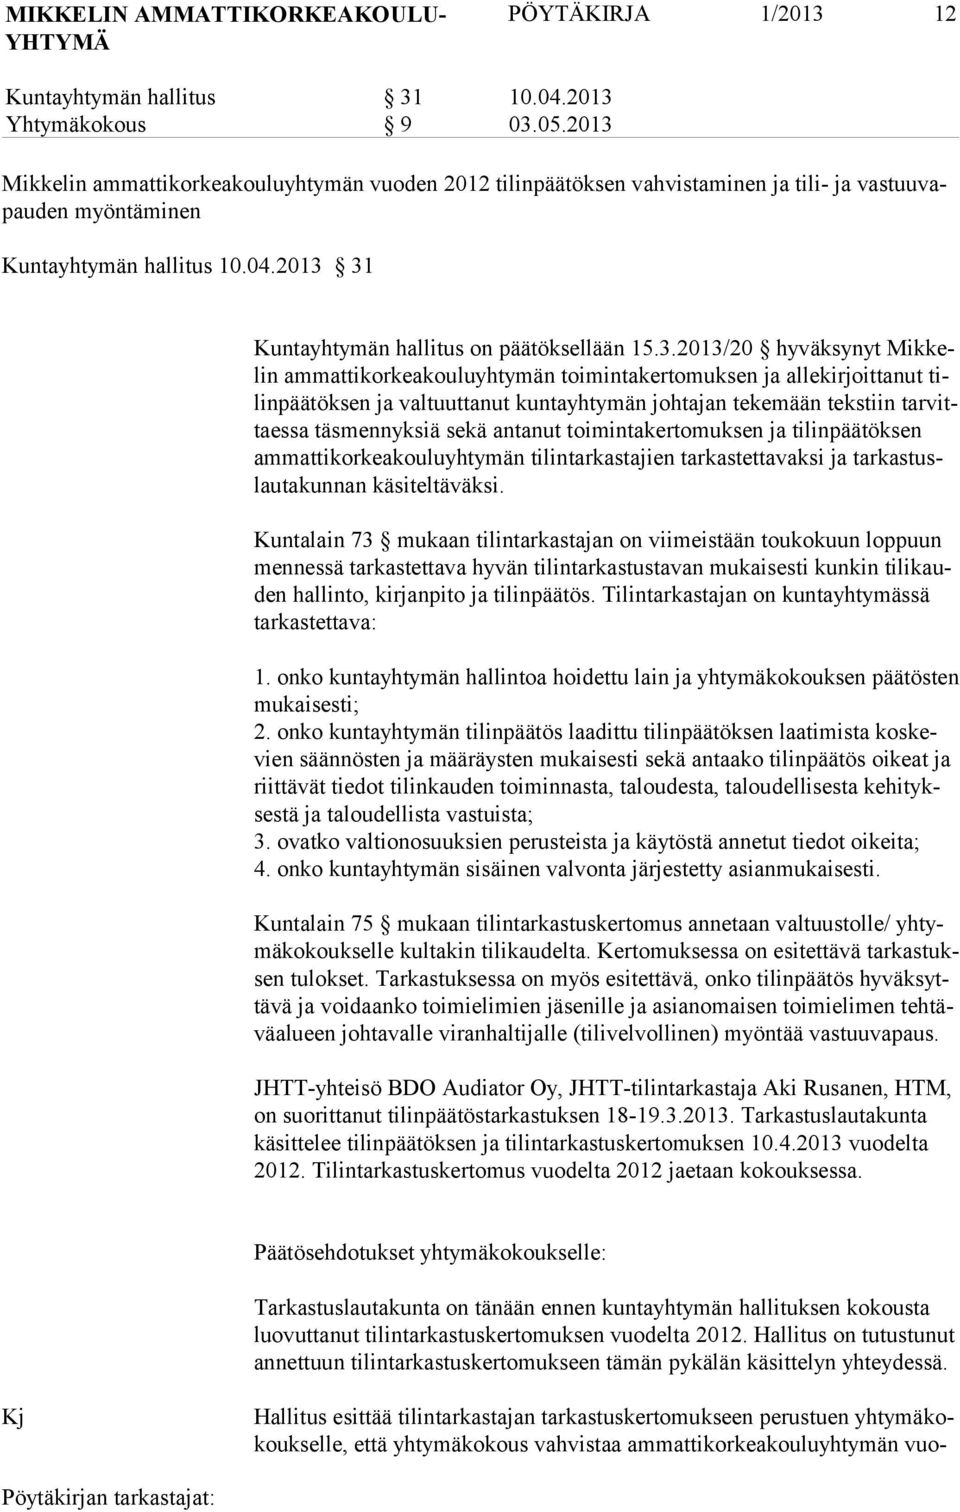 15.3.2013/20 hyväksynyt Mikkelin ammattikorkeakouluyhtymän toimintakertomuksen ja allekirjoittanut tilinpäätöksen ja valtuuttanut kuntayhtymän johtajan tekemään tekstiin tarvittaessa täsmennyksiä